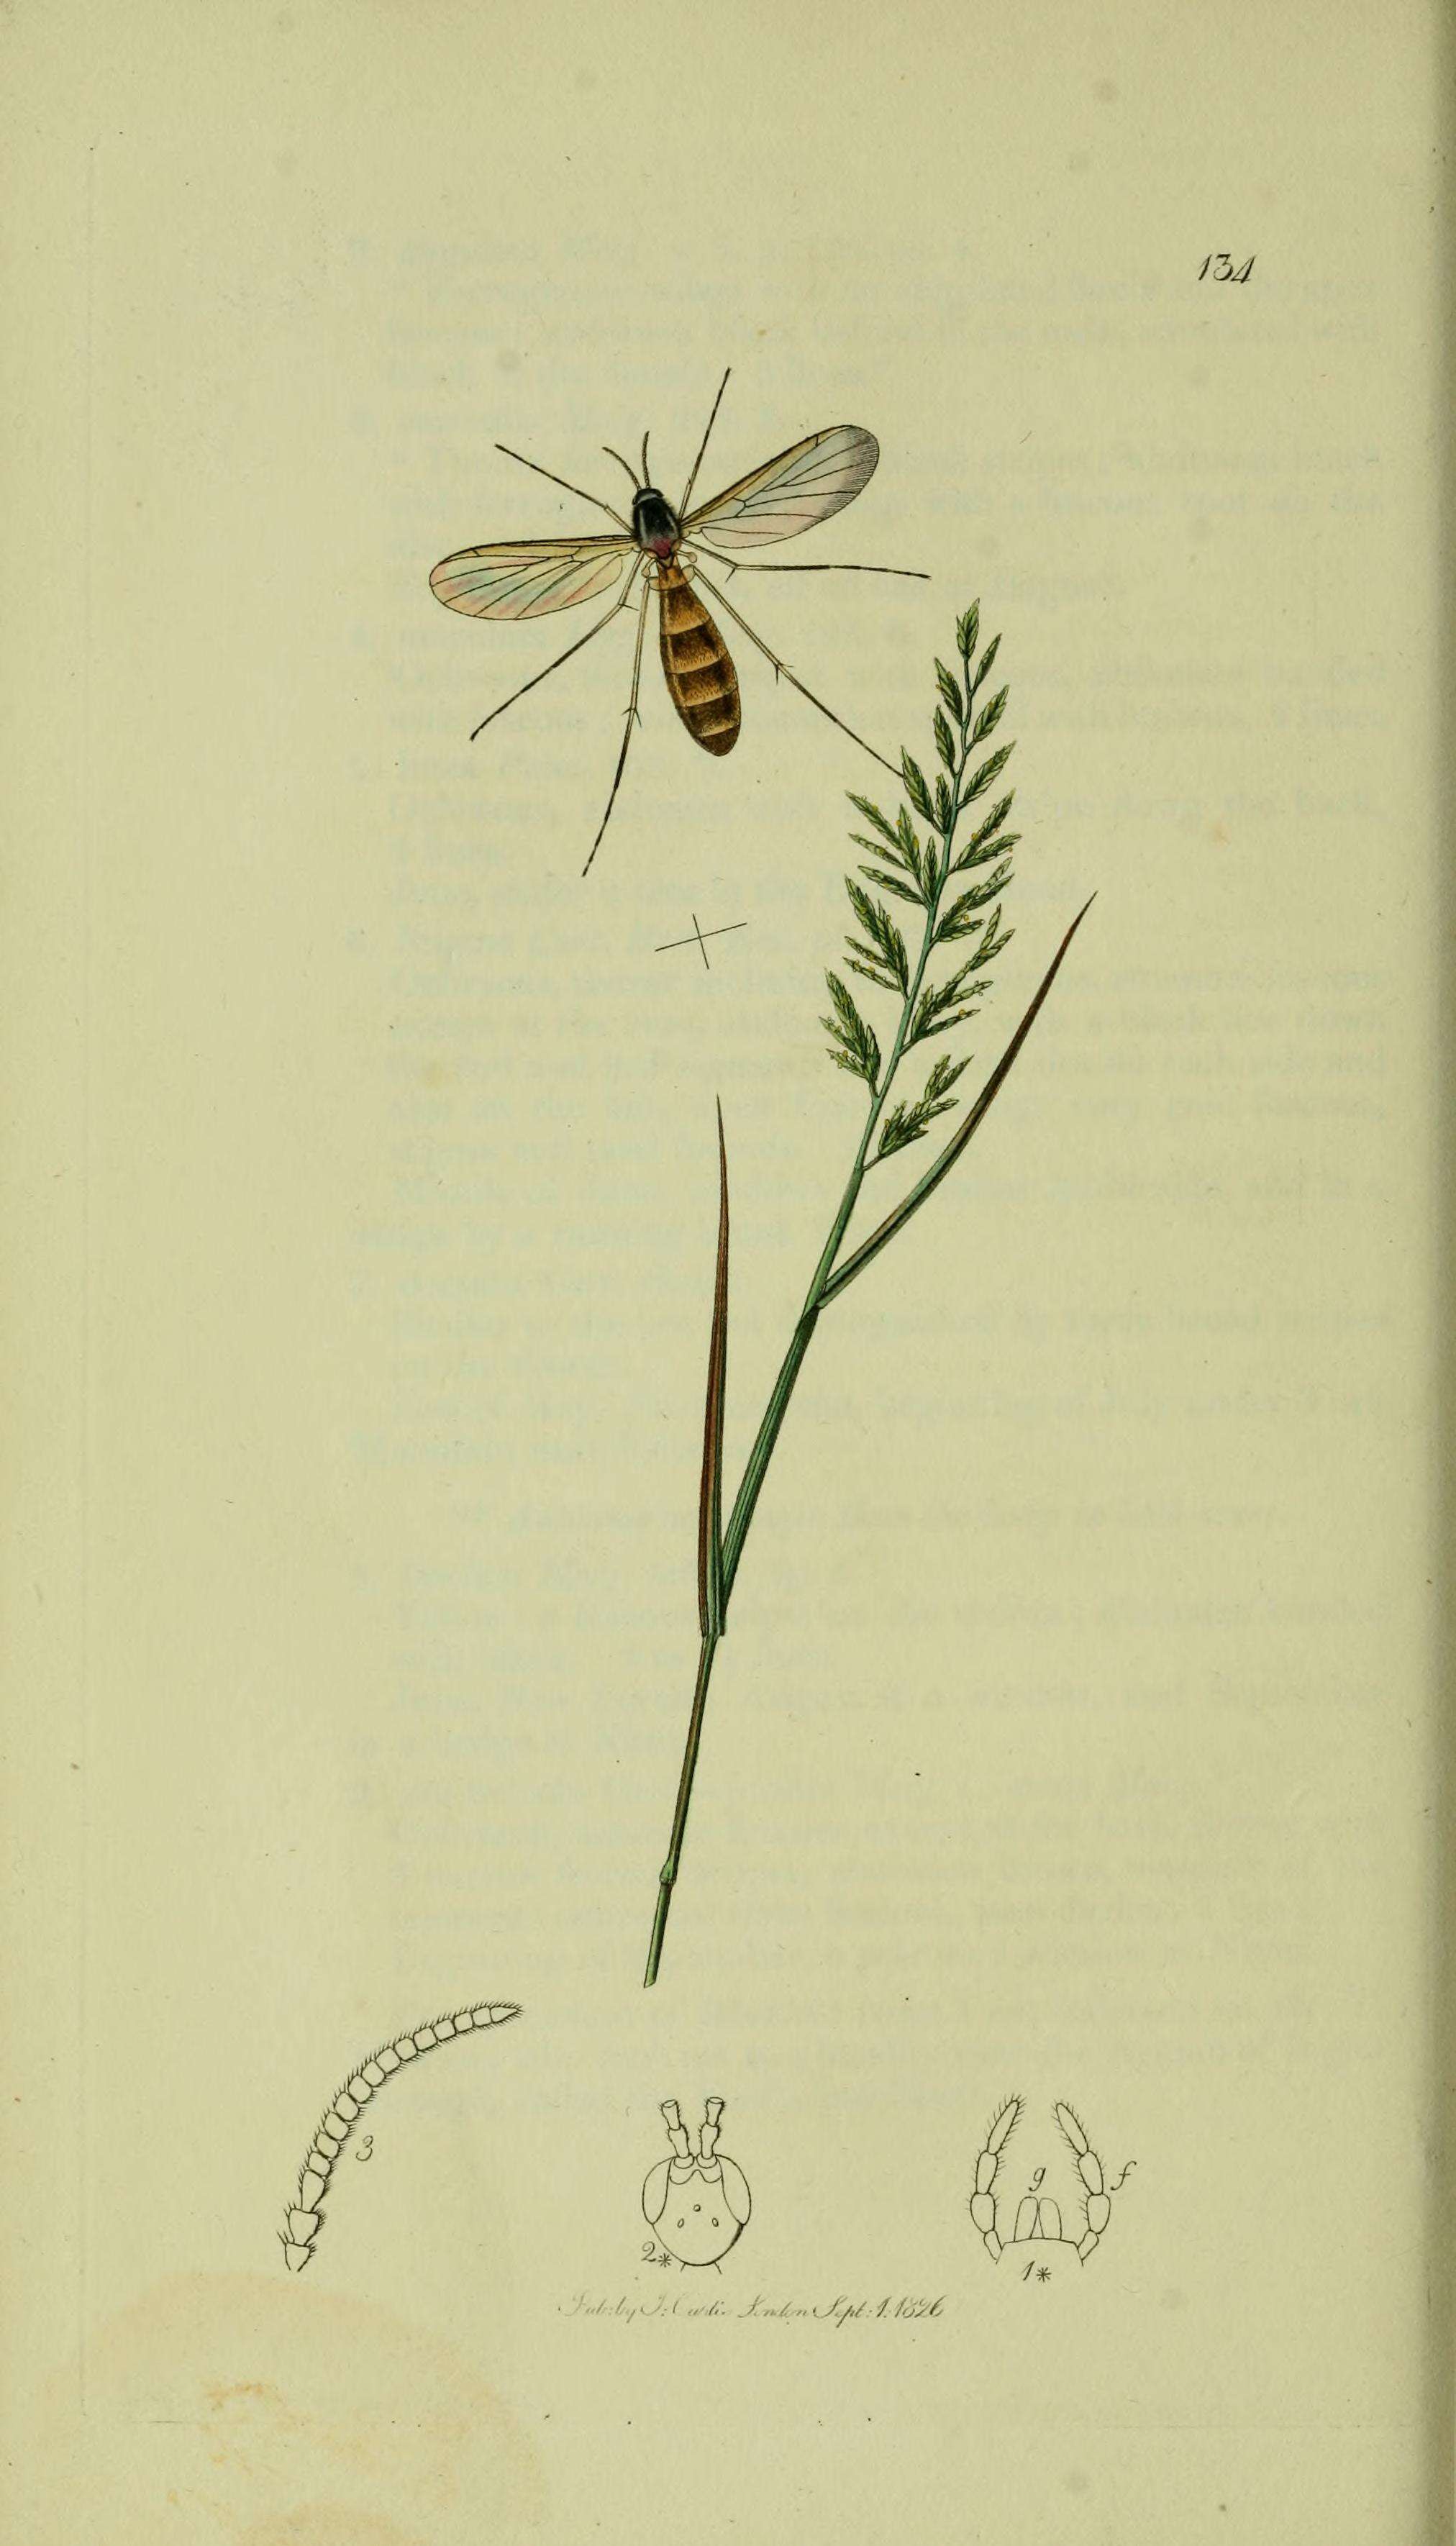 Image of Orfelia nemoralis (Meigen 1818)